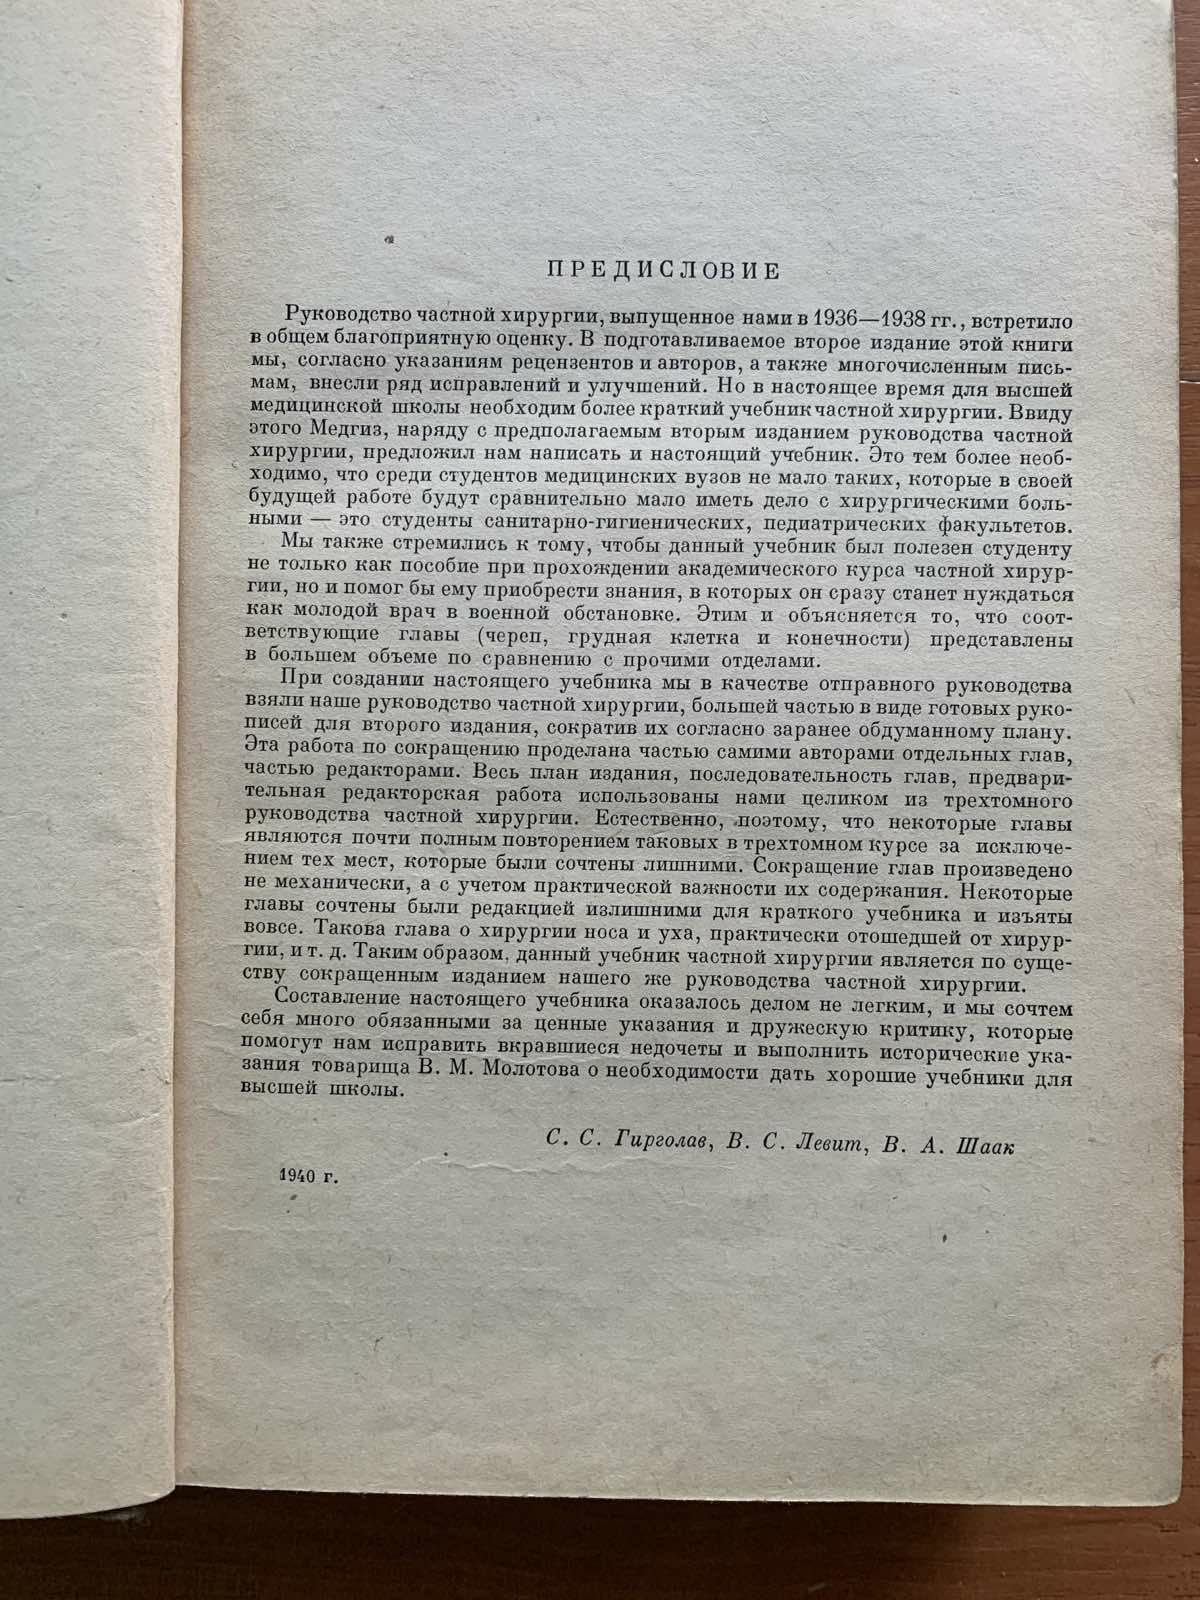 Учебник частной хирургии,  МЕДГИЗ 1940 год